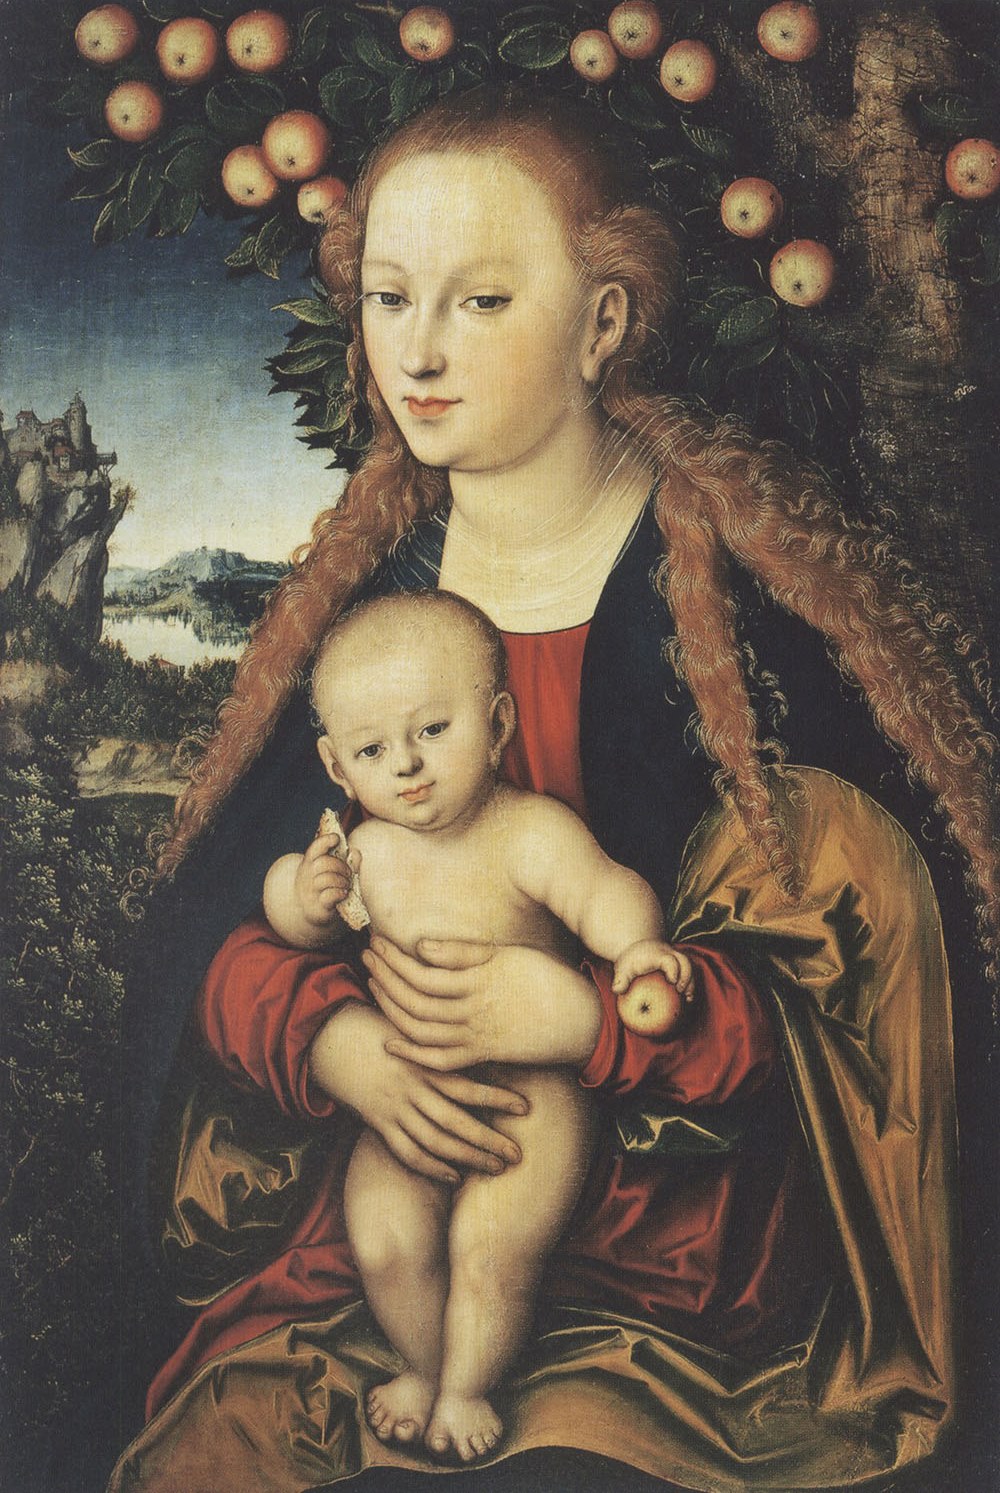 Лукас Кранах Старший. "Мадонна с Младенцем под яблоней". Около 1530.